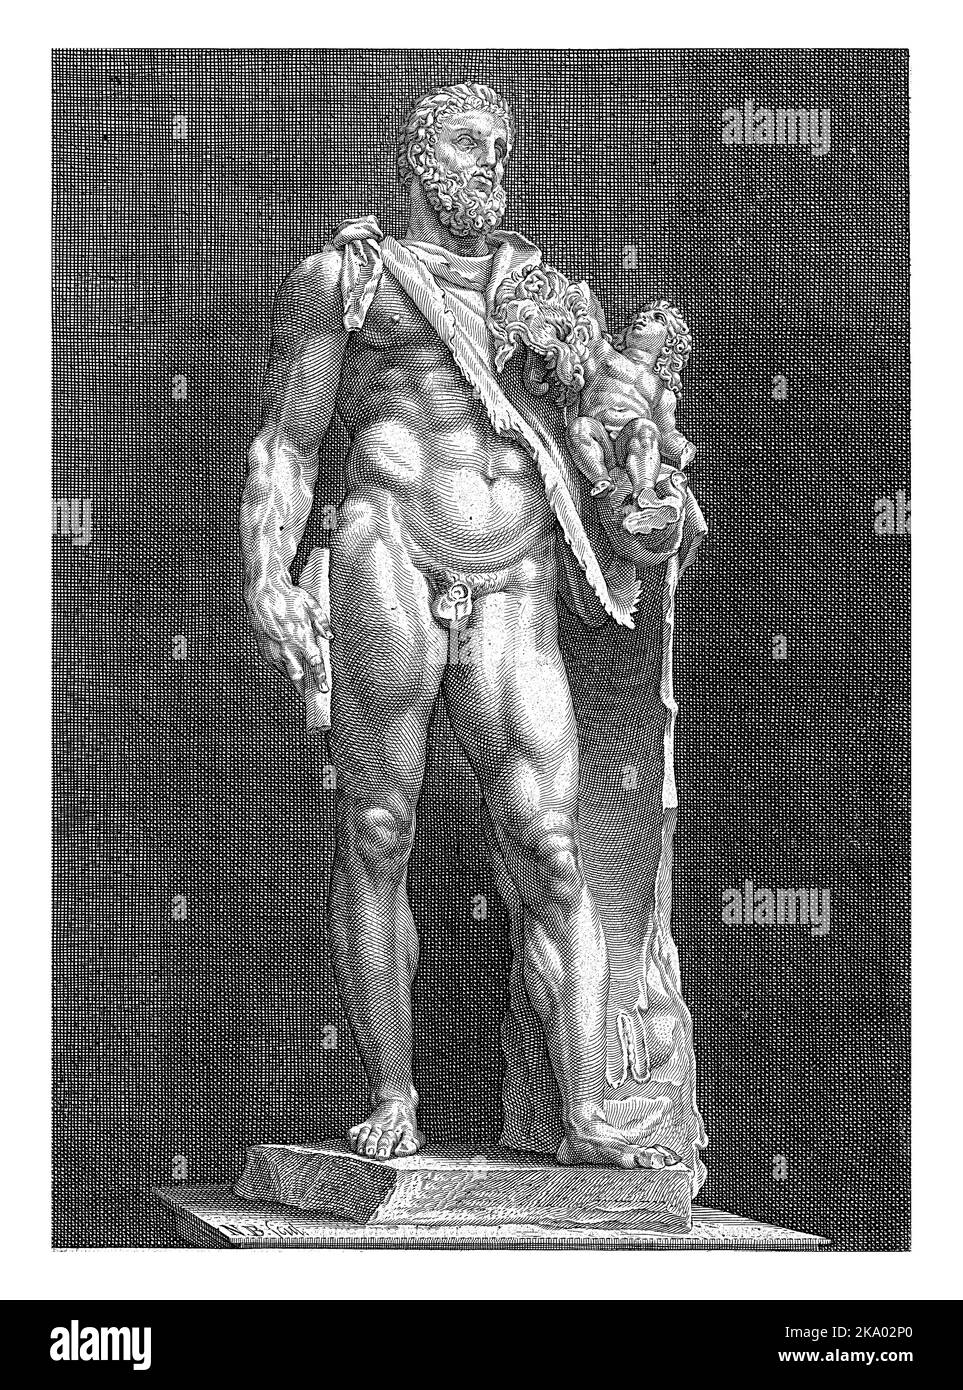 Une statue d'Hercule avec son fils Telephos sur son bras. Sa peau de lion est suspendue sur l'épaule de Hercule et l'enfant joue avec la tête du lion. Banque D'Images